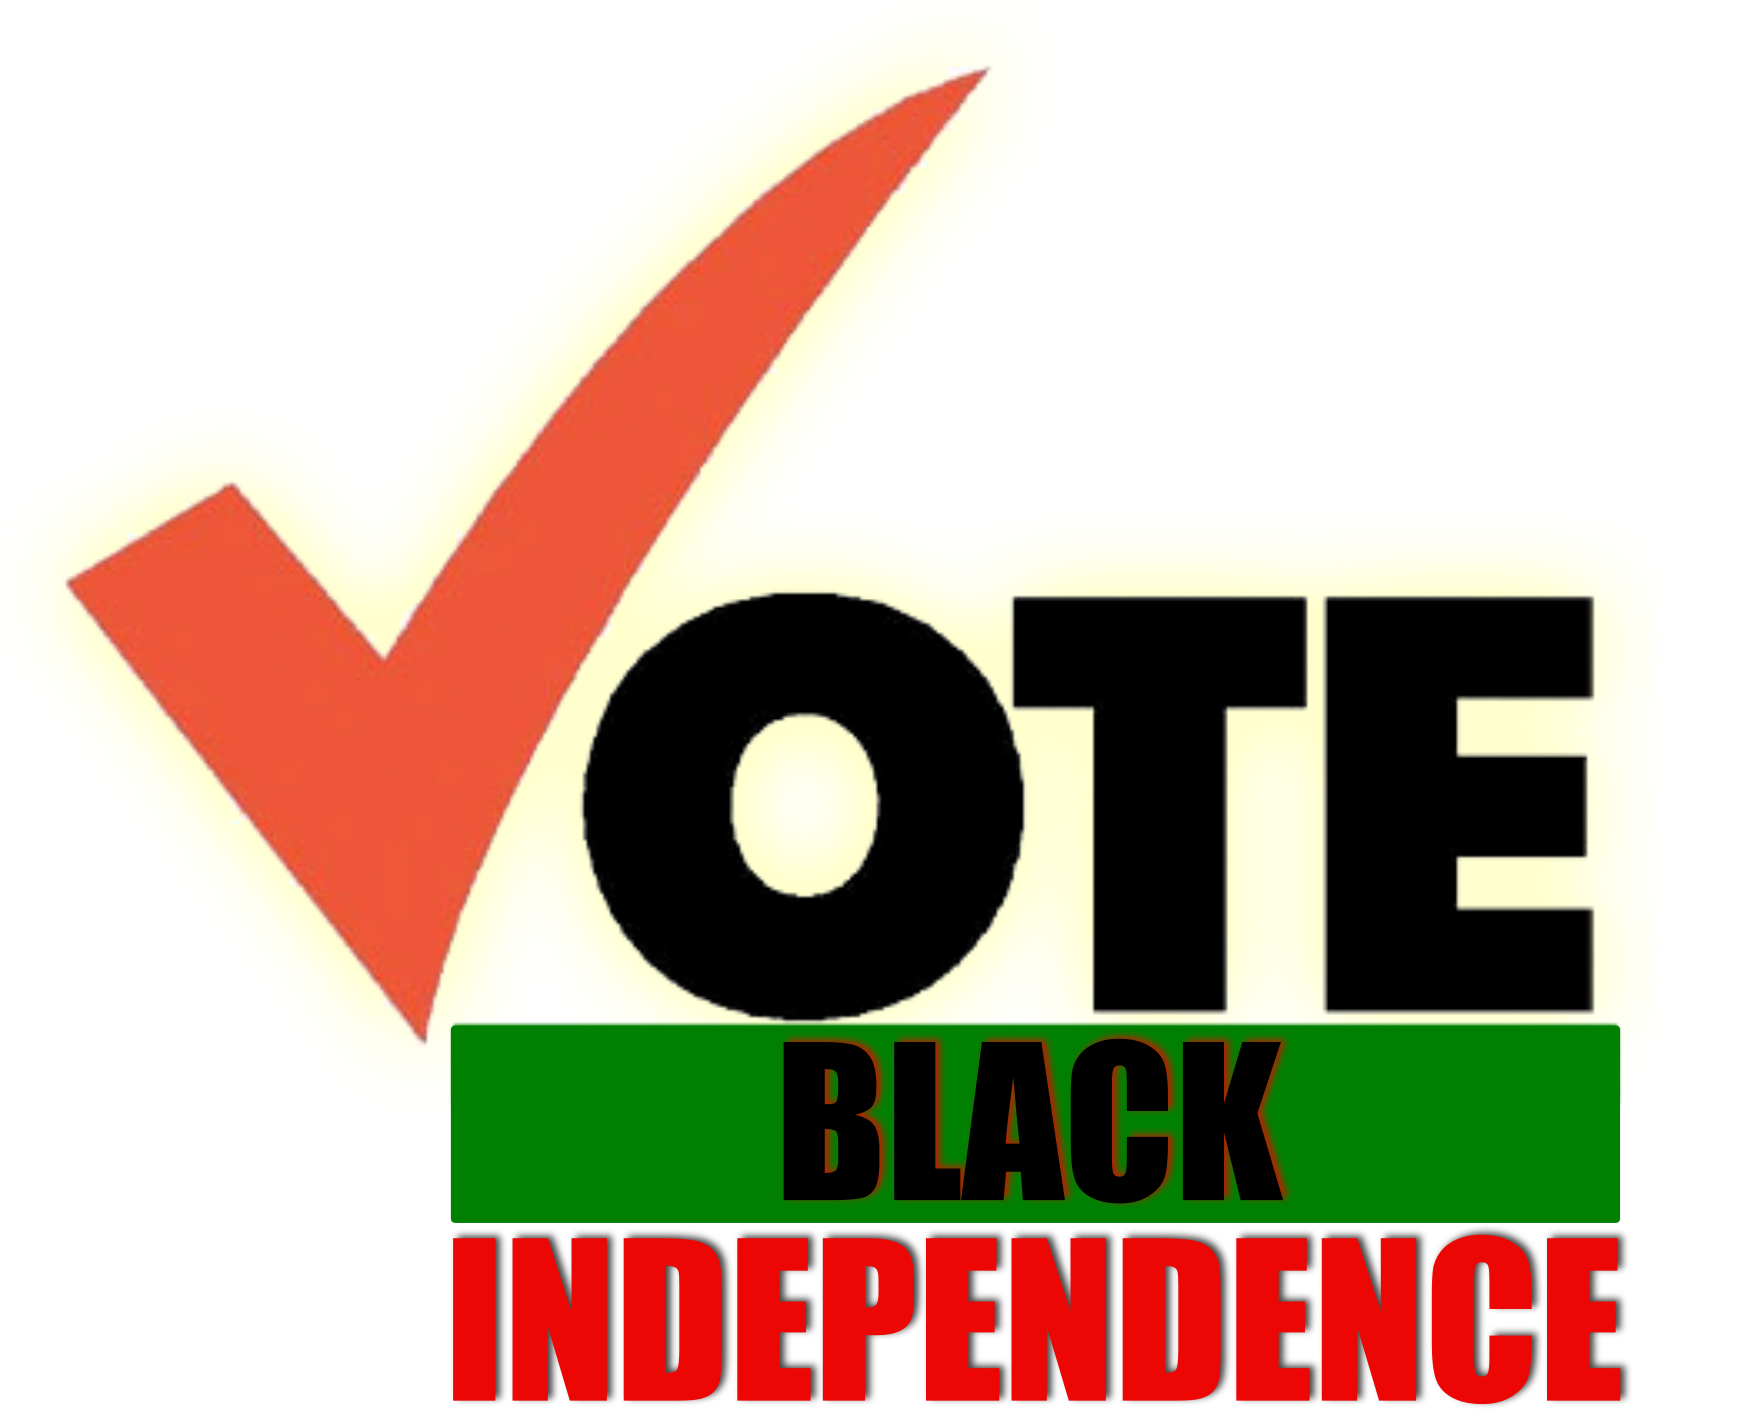 Black independence vote logo